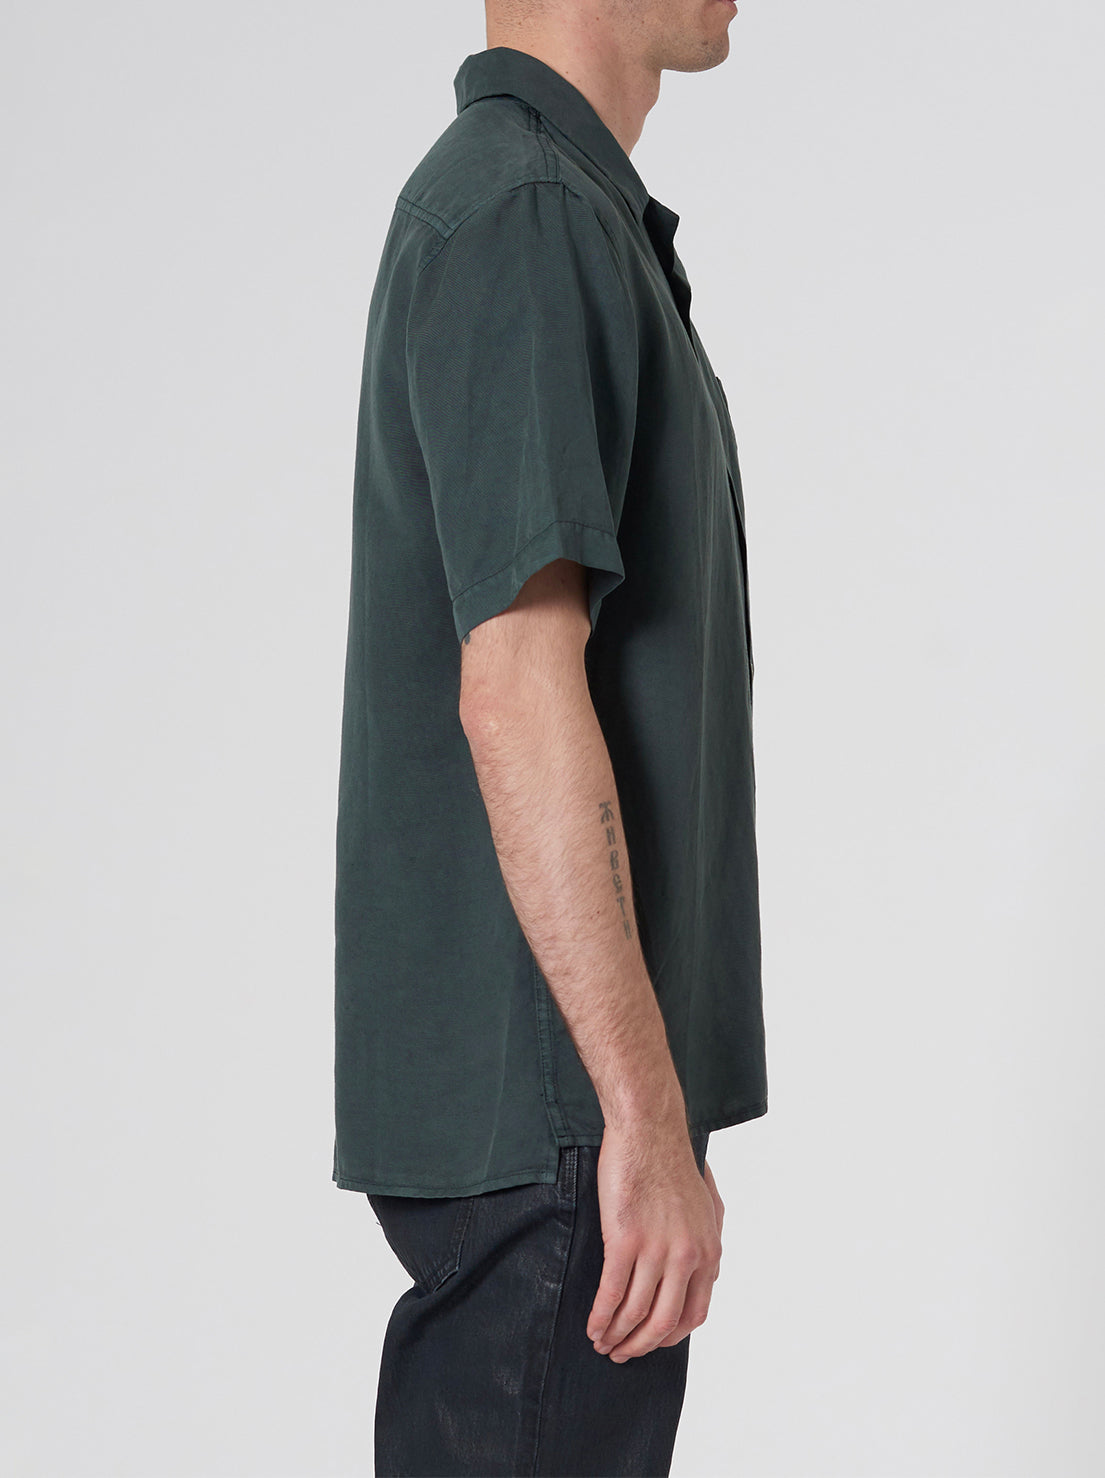 Neuw - Curtis S/S Shirt - Spruce Green